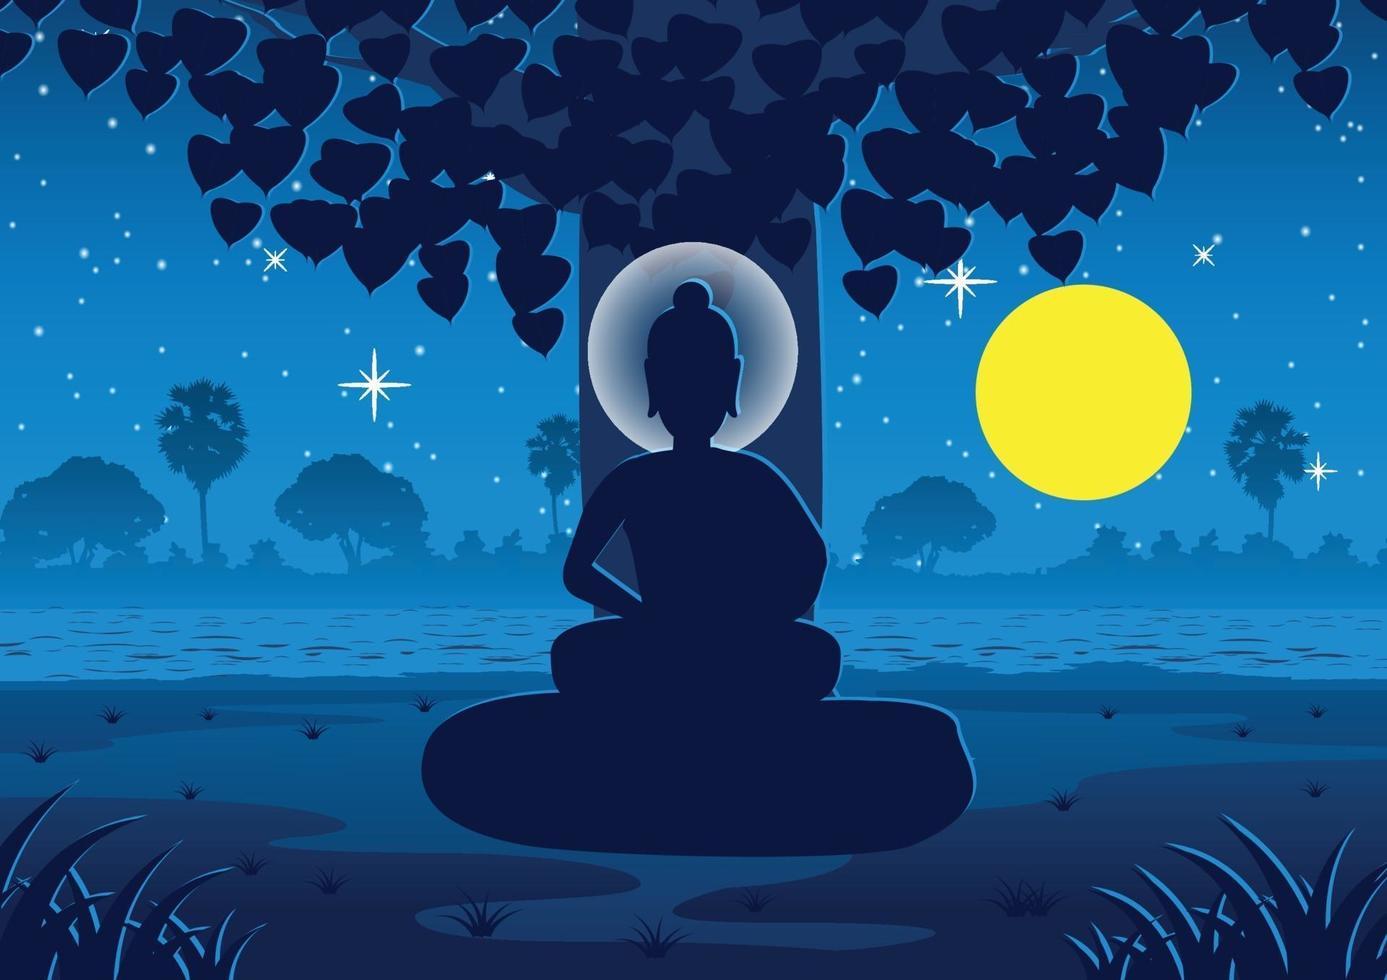 lord of buddha blir upplyst under träd på fullmånenatt nära floden i Indien vektor